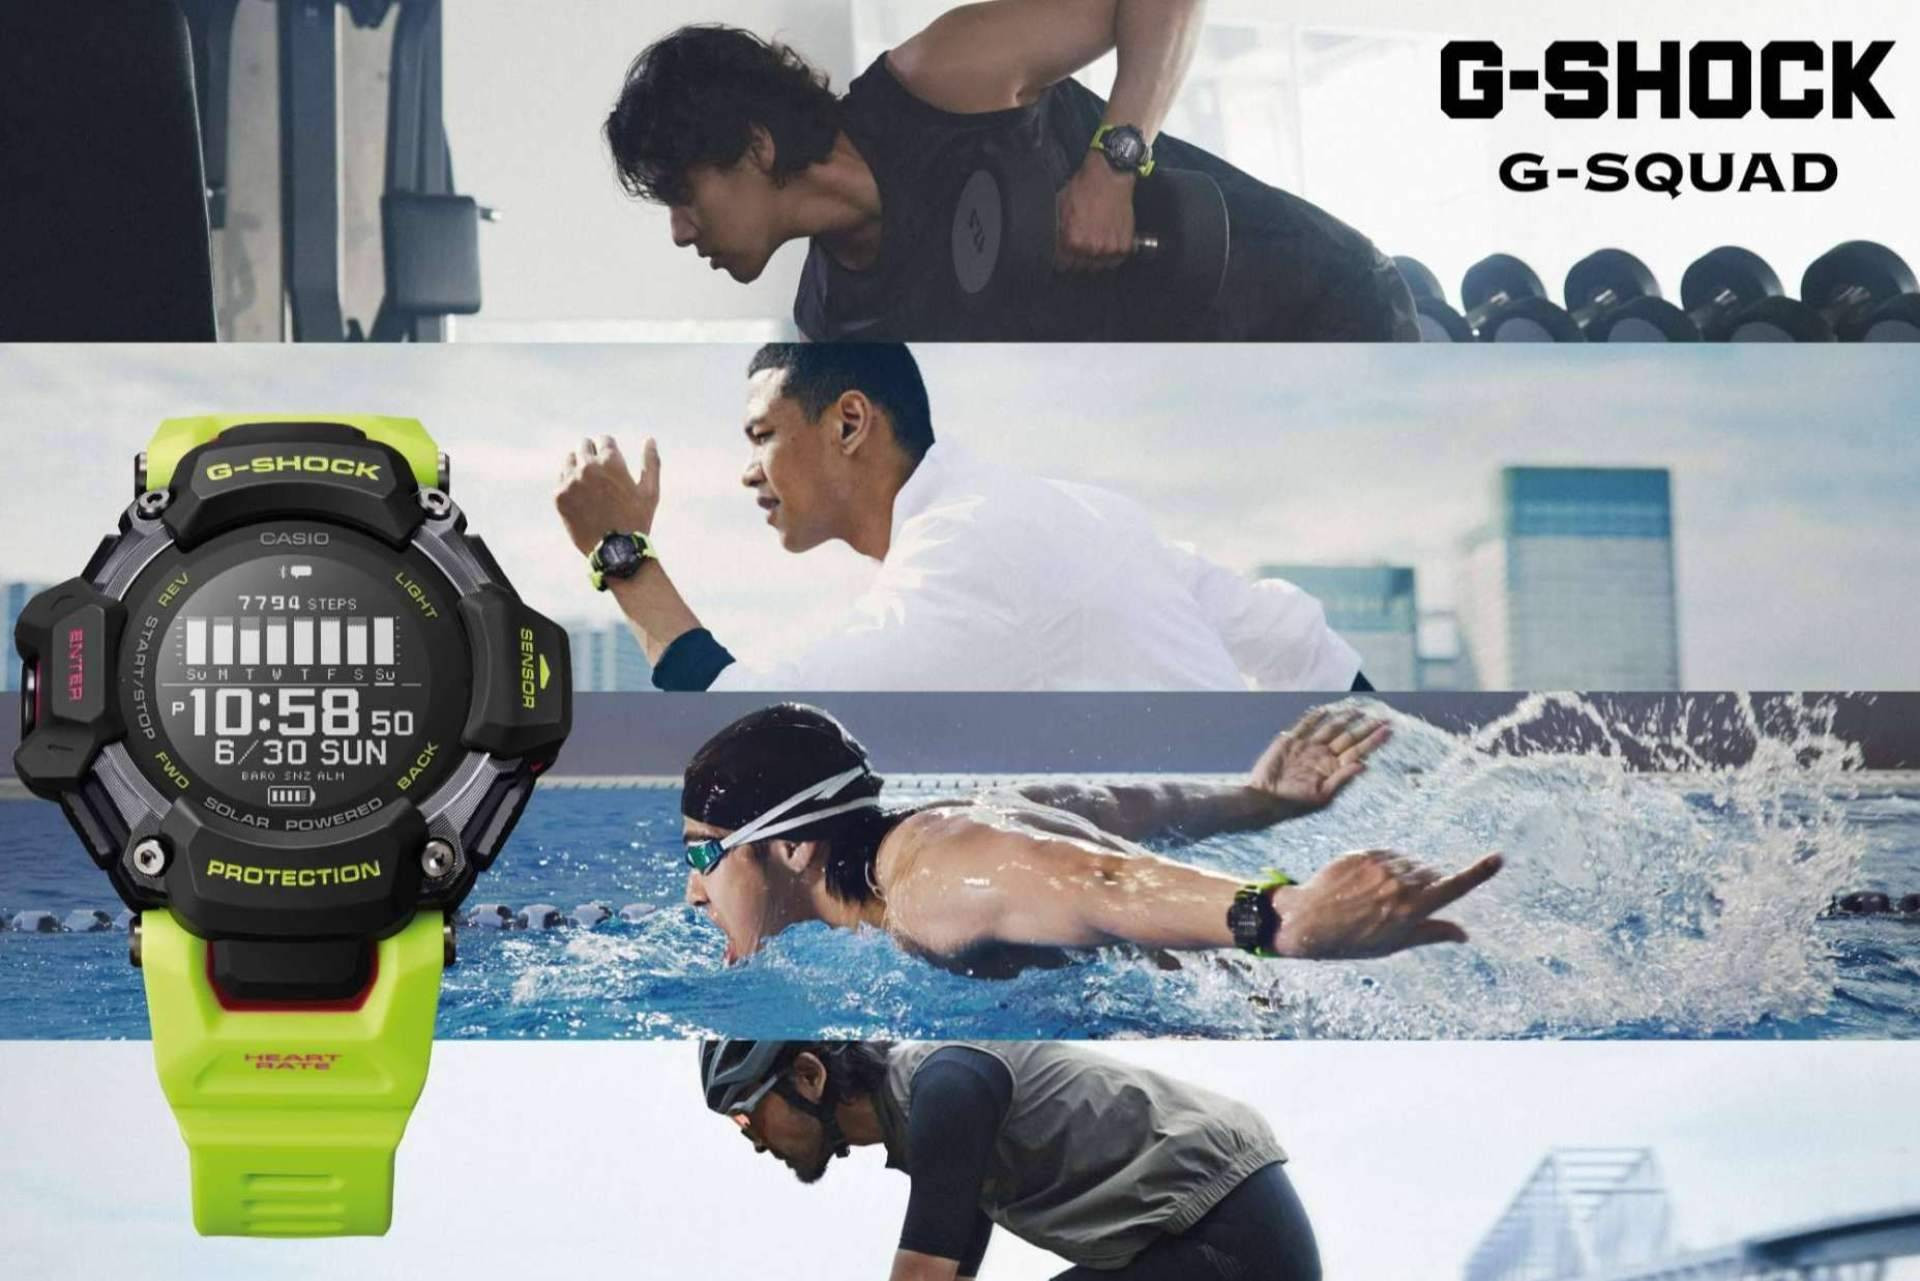  G-SQUAD, el reloj ideal para deportistas que lanza la marca G-SHOCK 